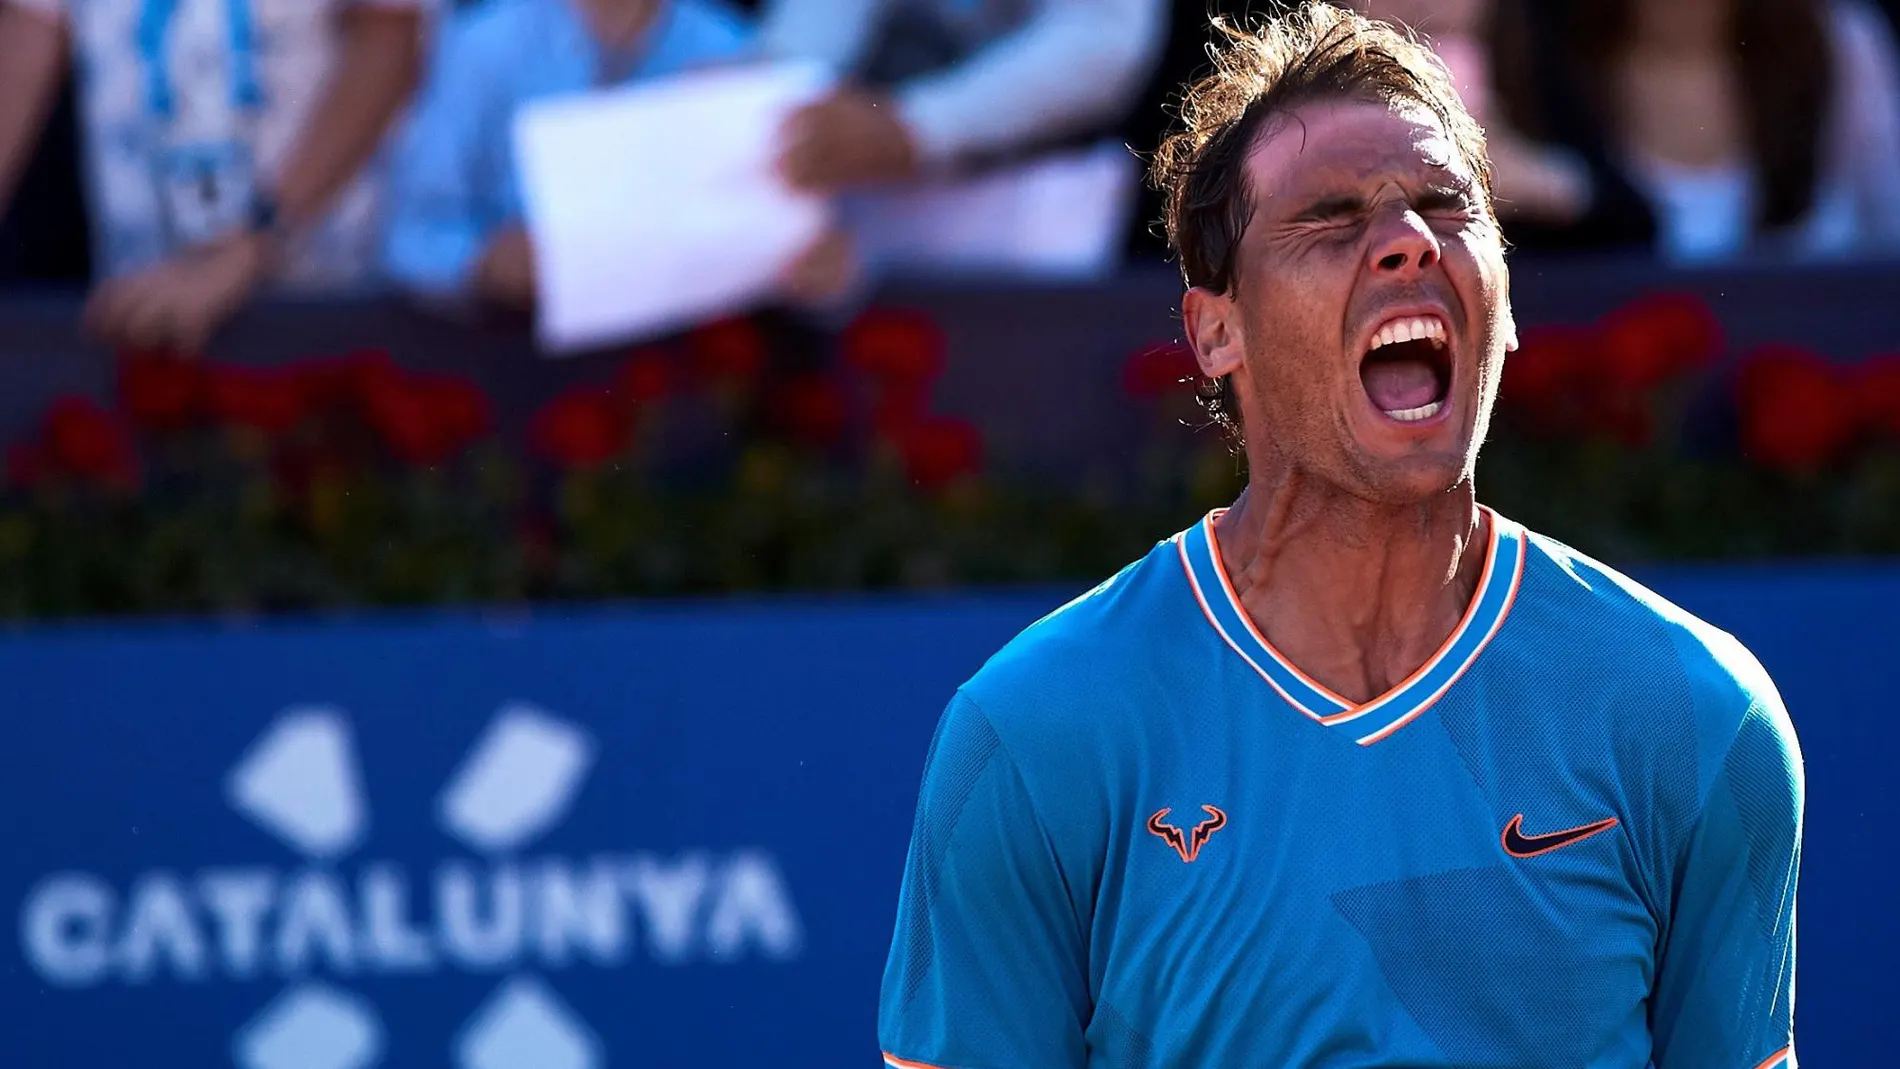 El tenista Rafa Nadal celebra su victoria en cuartos de final del Godó